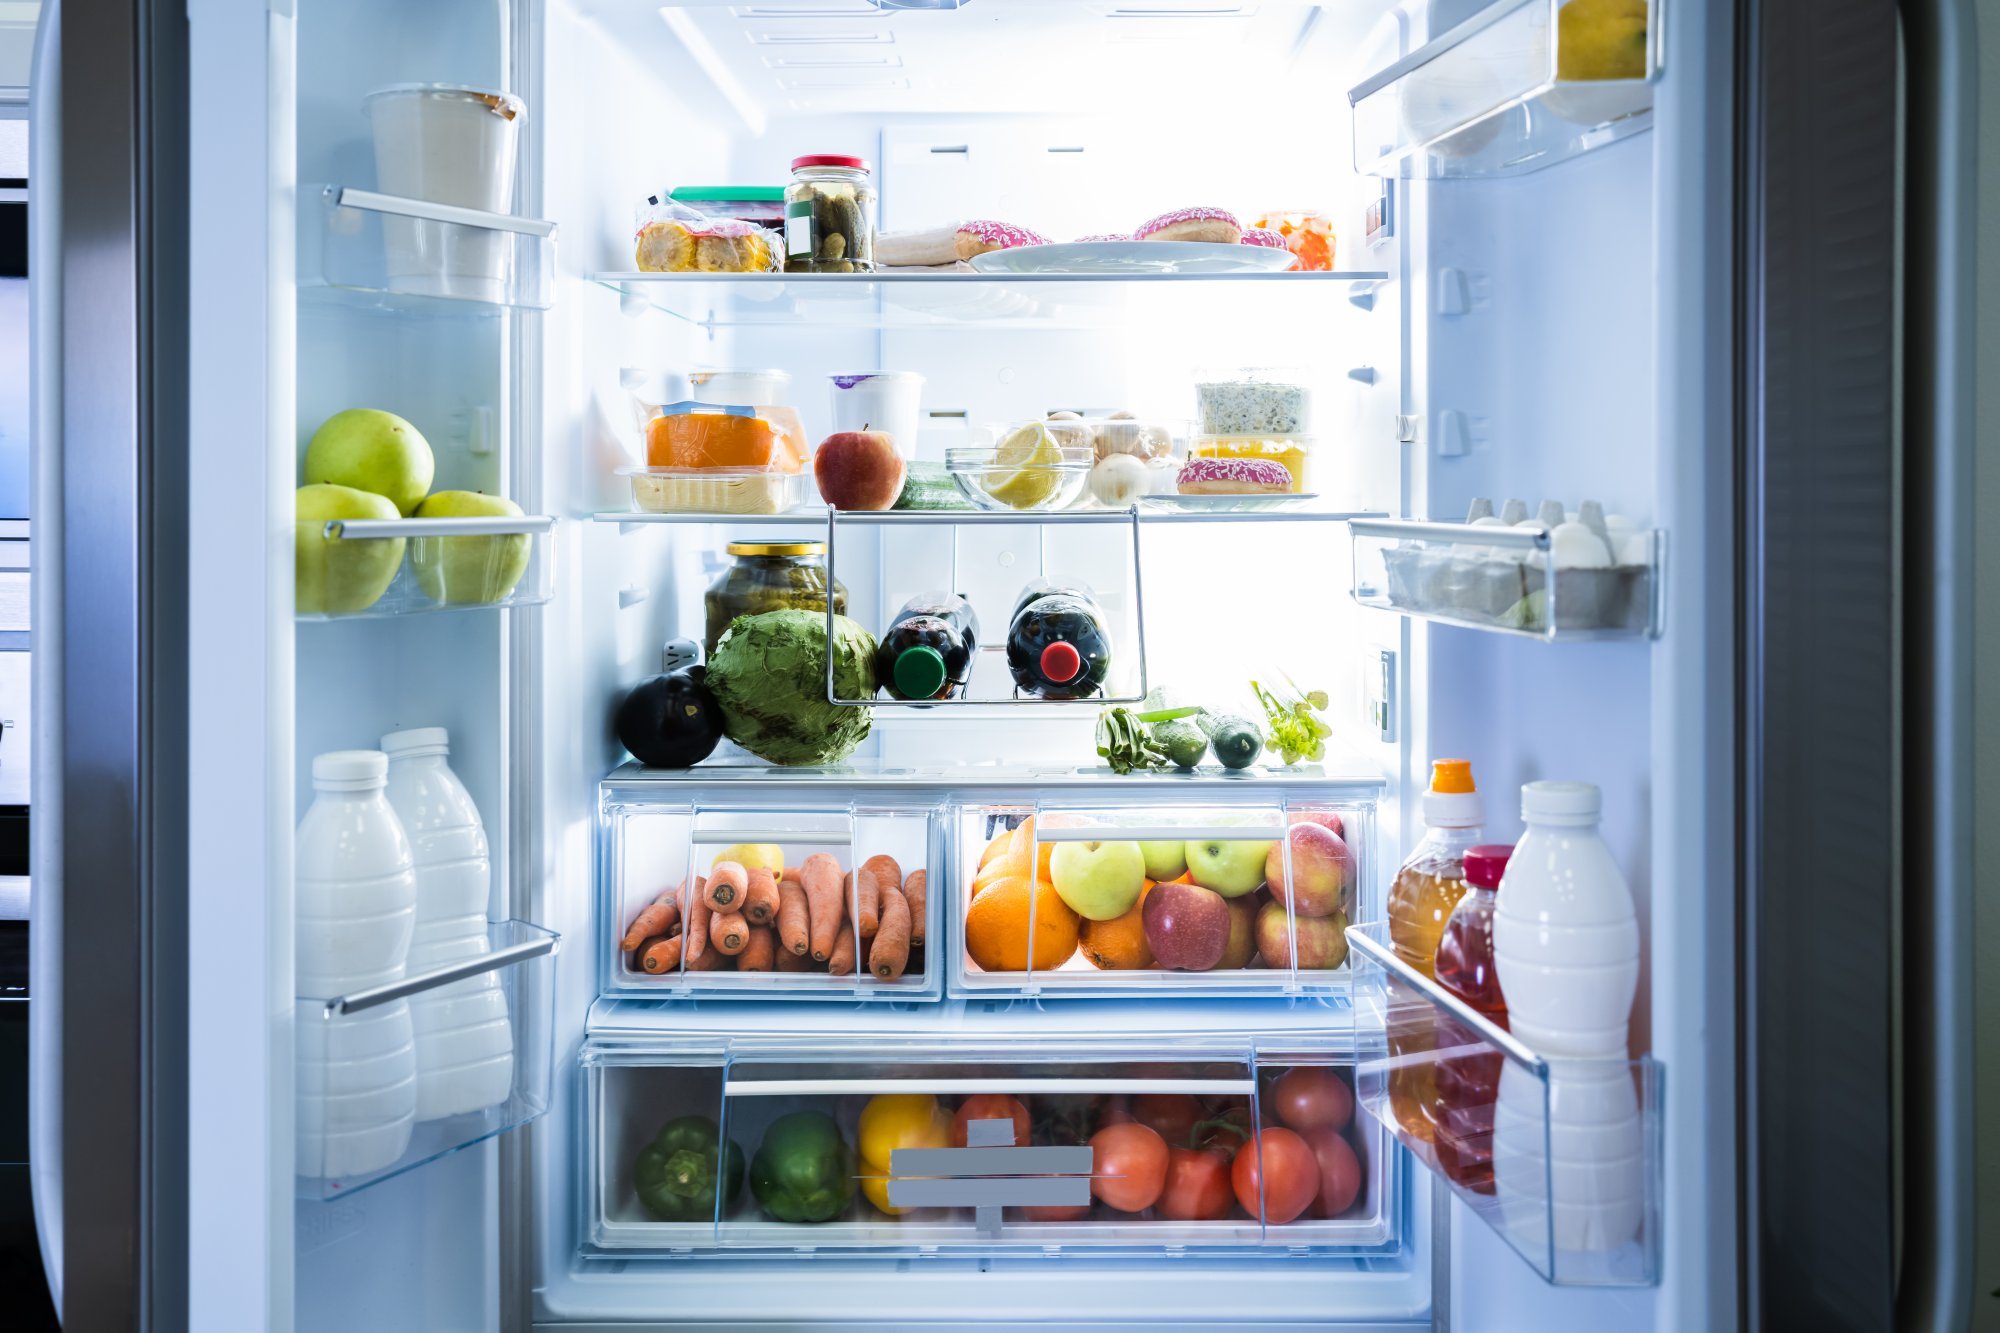 Οδηγός αγοράς: Πώς θα βρεις το ιδανικό ψυγείο εντός budget